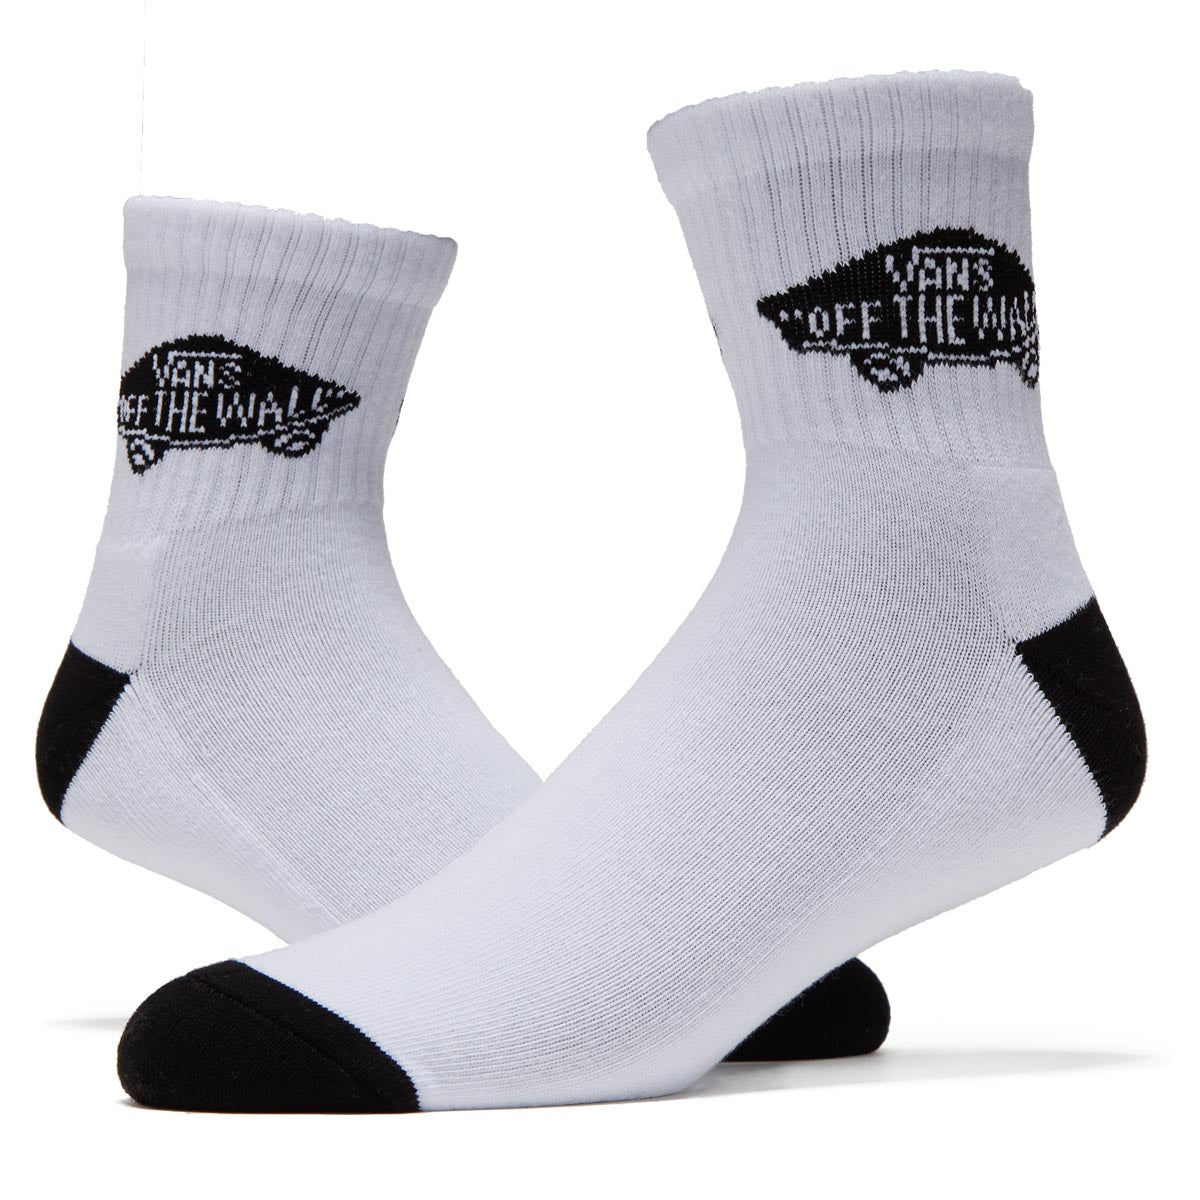 Vans Art Half Crew Socks - White/Black image 2